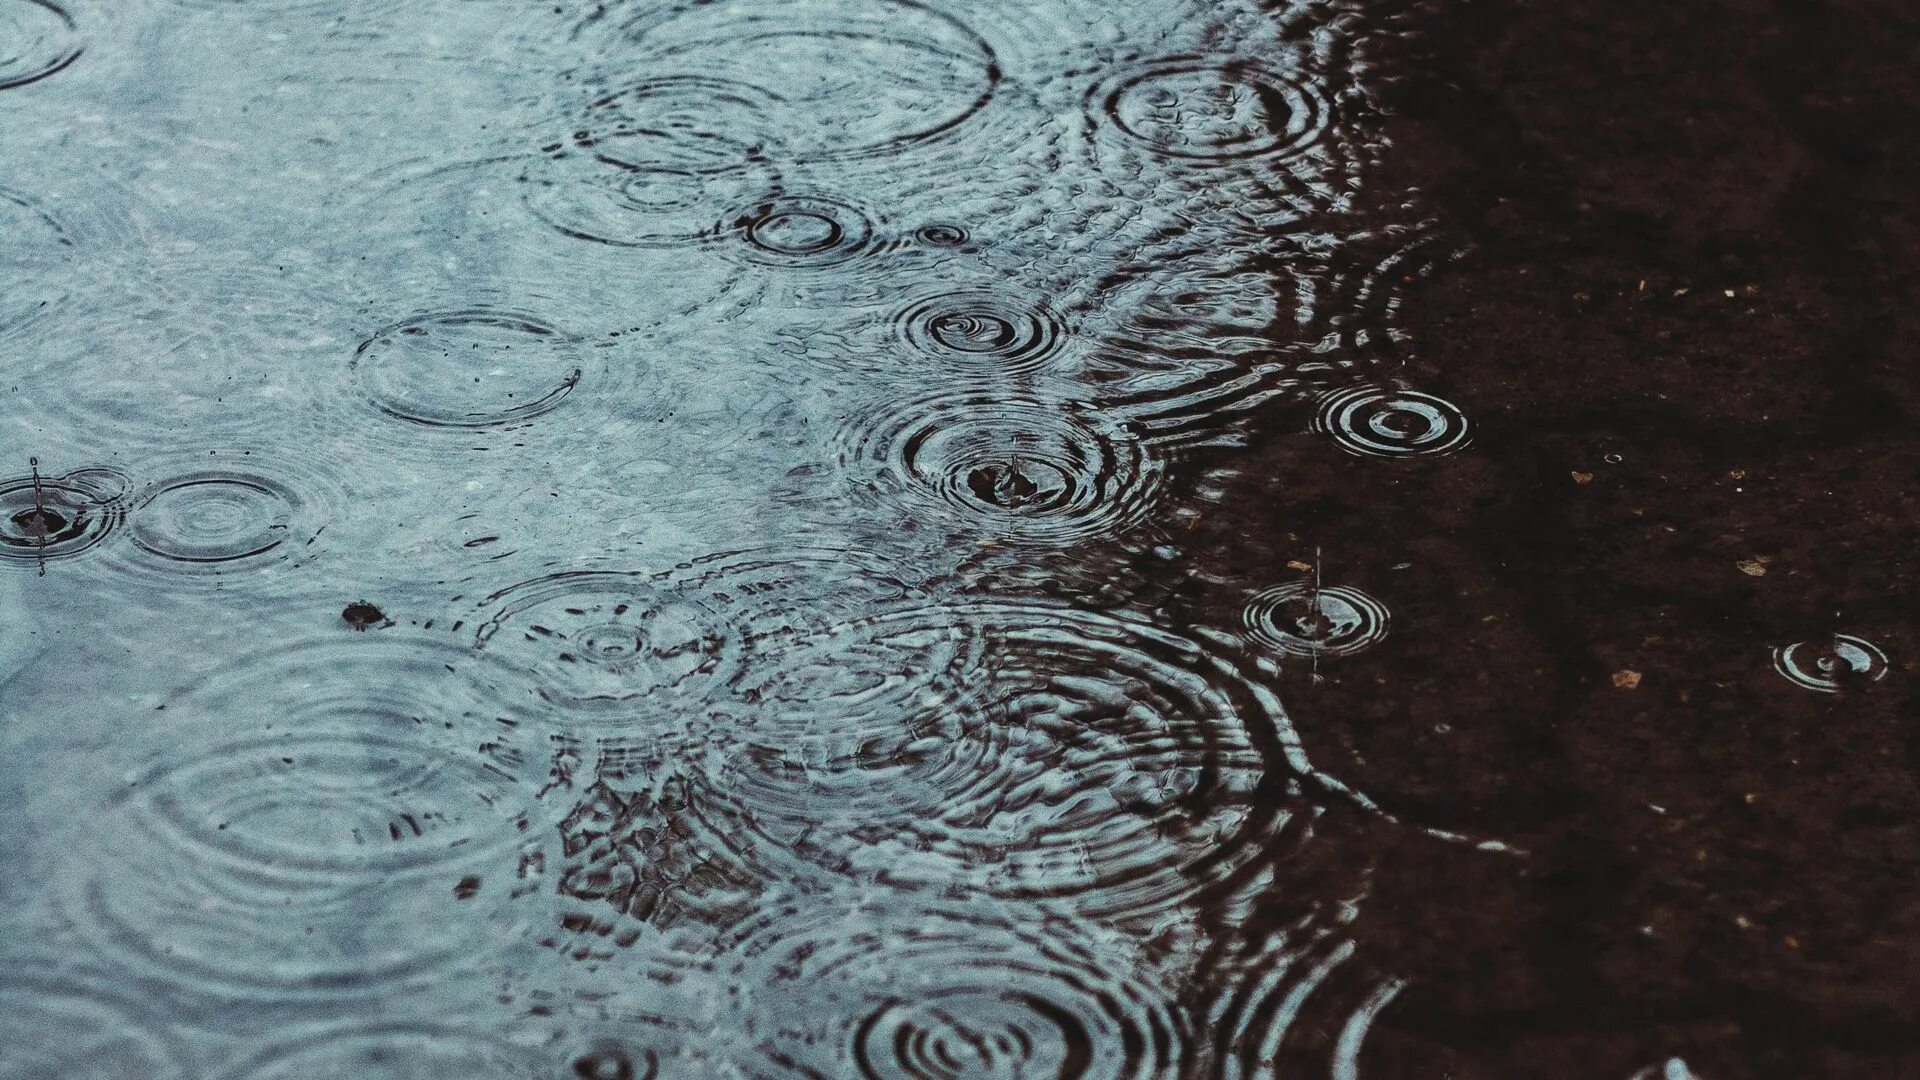 Везде лужи воды. Капли дождя на асфальте. Обои дождь. Капли дождя в луже. Брызги от капель дождя.